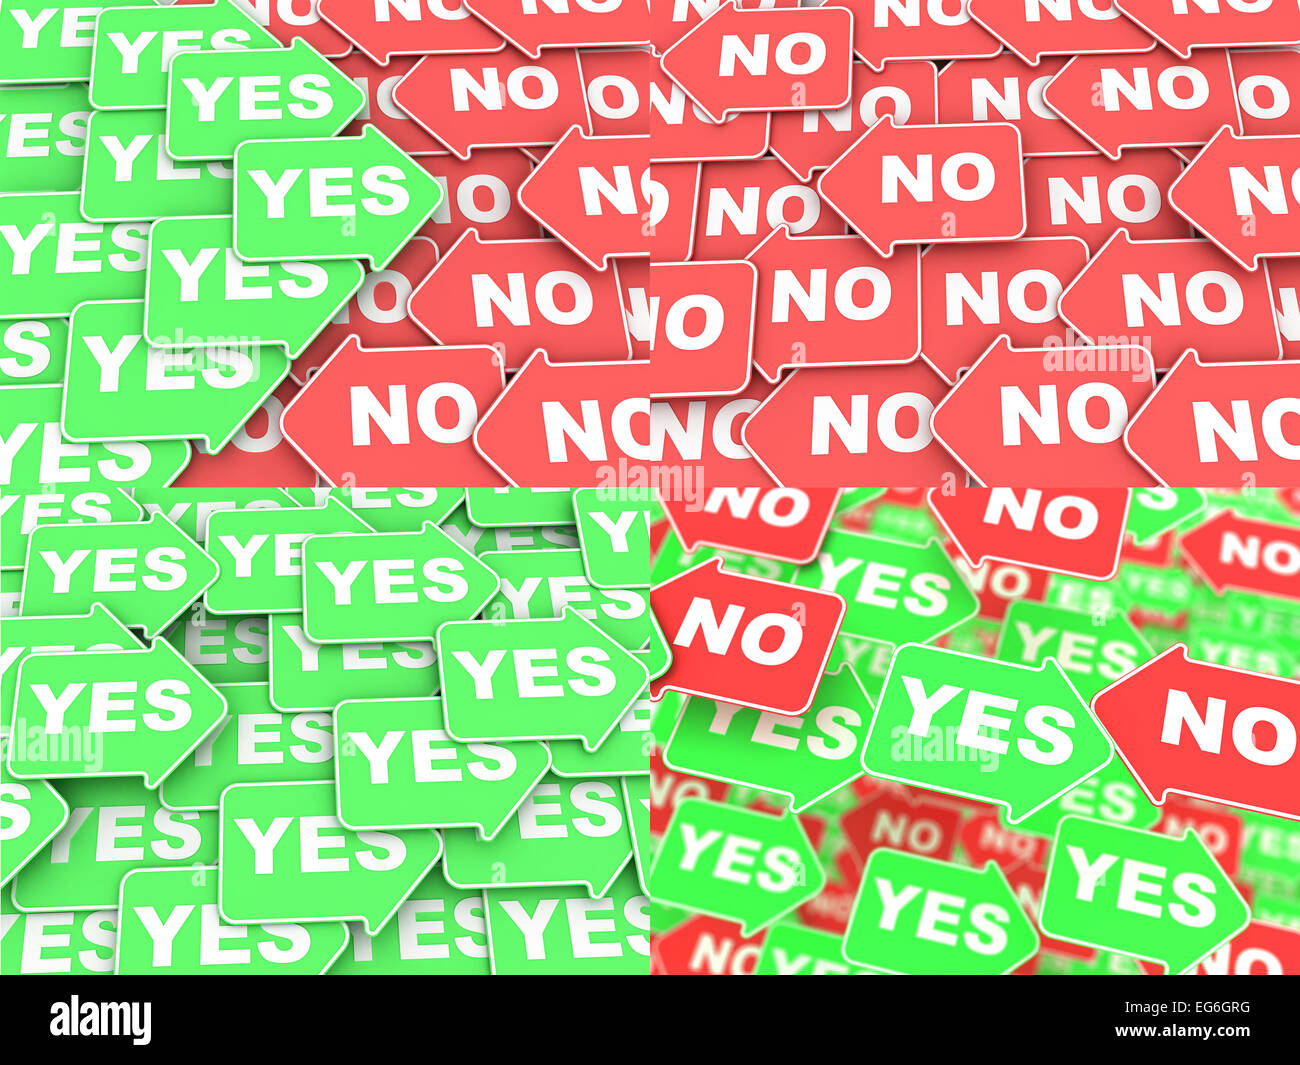 Konzept der Wahl - Satz von Green und Red Arrows mit einem Worte ja und Nein in verschiedenen Kombinationen. Stockfoto